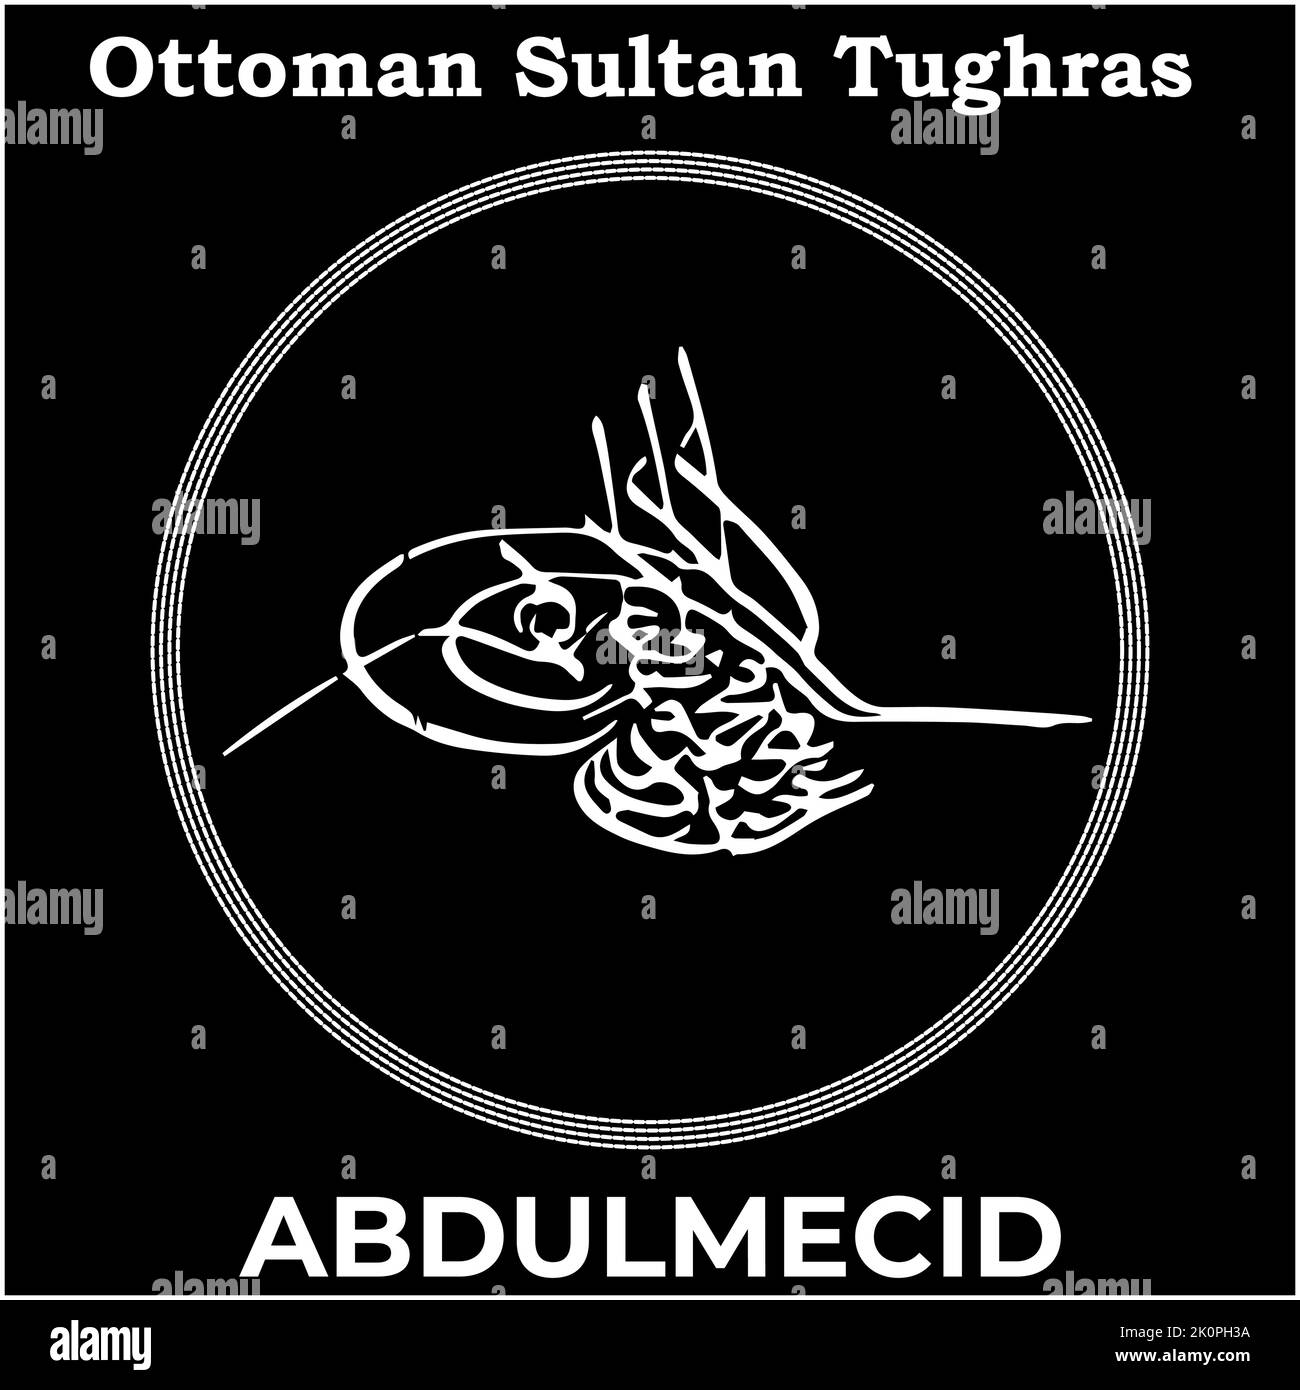 Immagine vettoriale con firma Tughra del trentunesimo sultano Ottomano Abdulmejid i, Tughra di Abdulmejid i con sfondo nero. Illustrazione Vettoriale